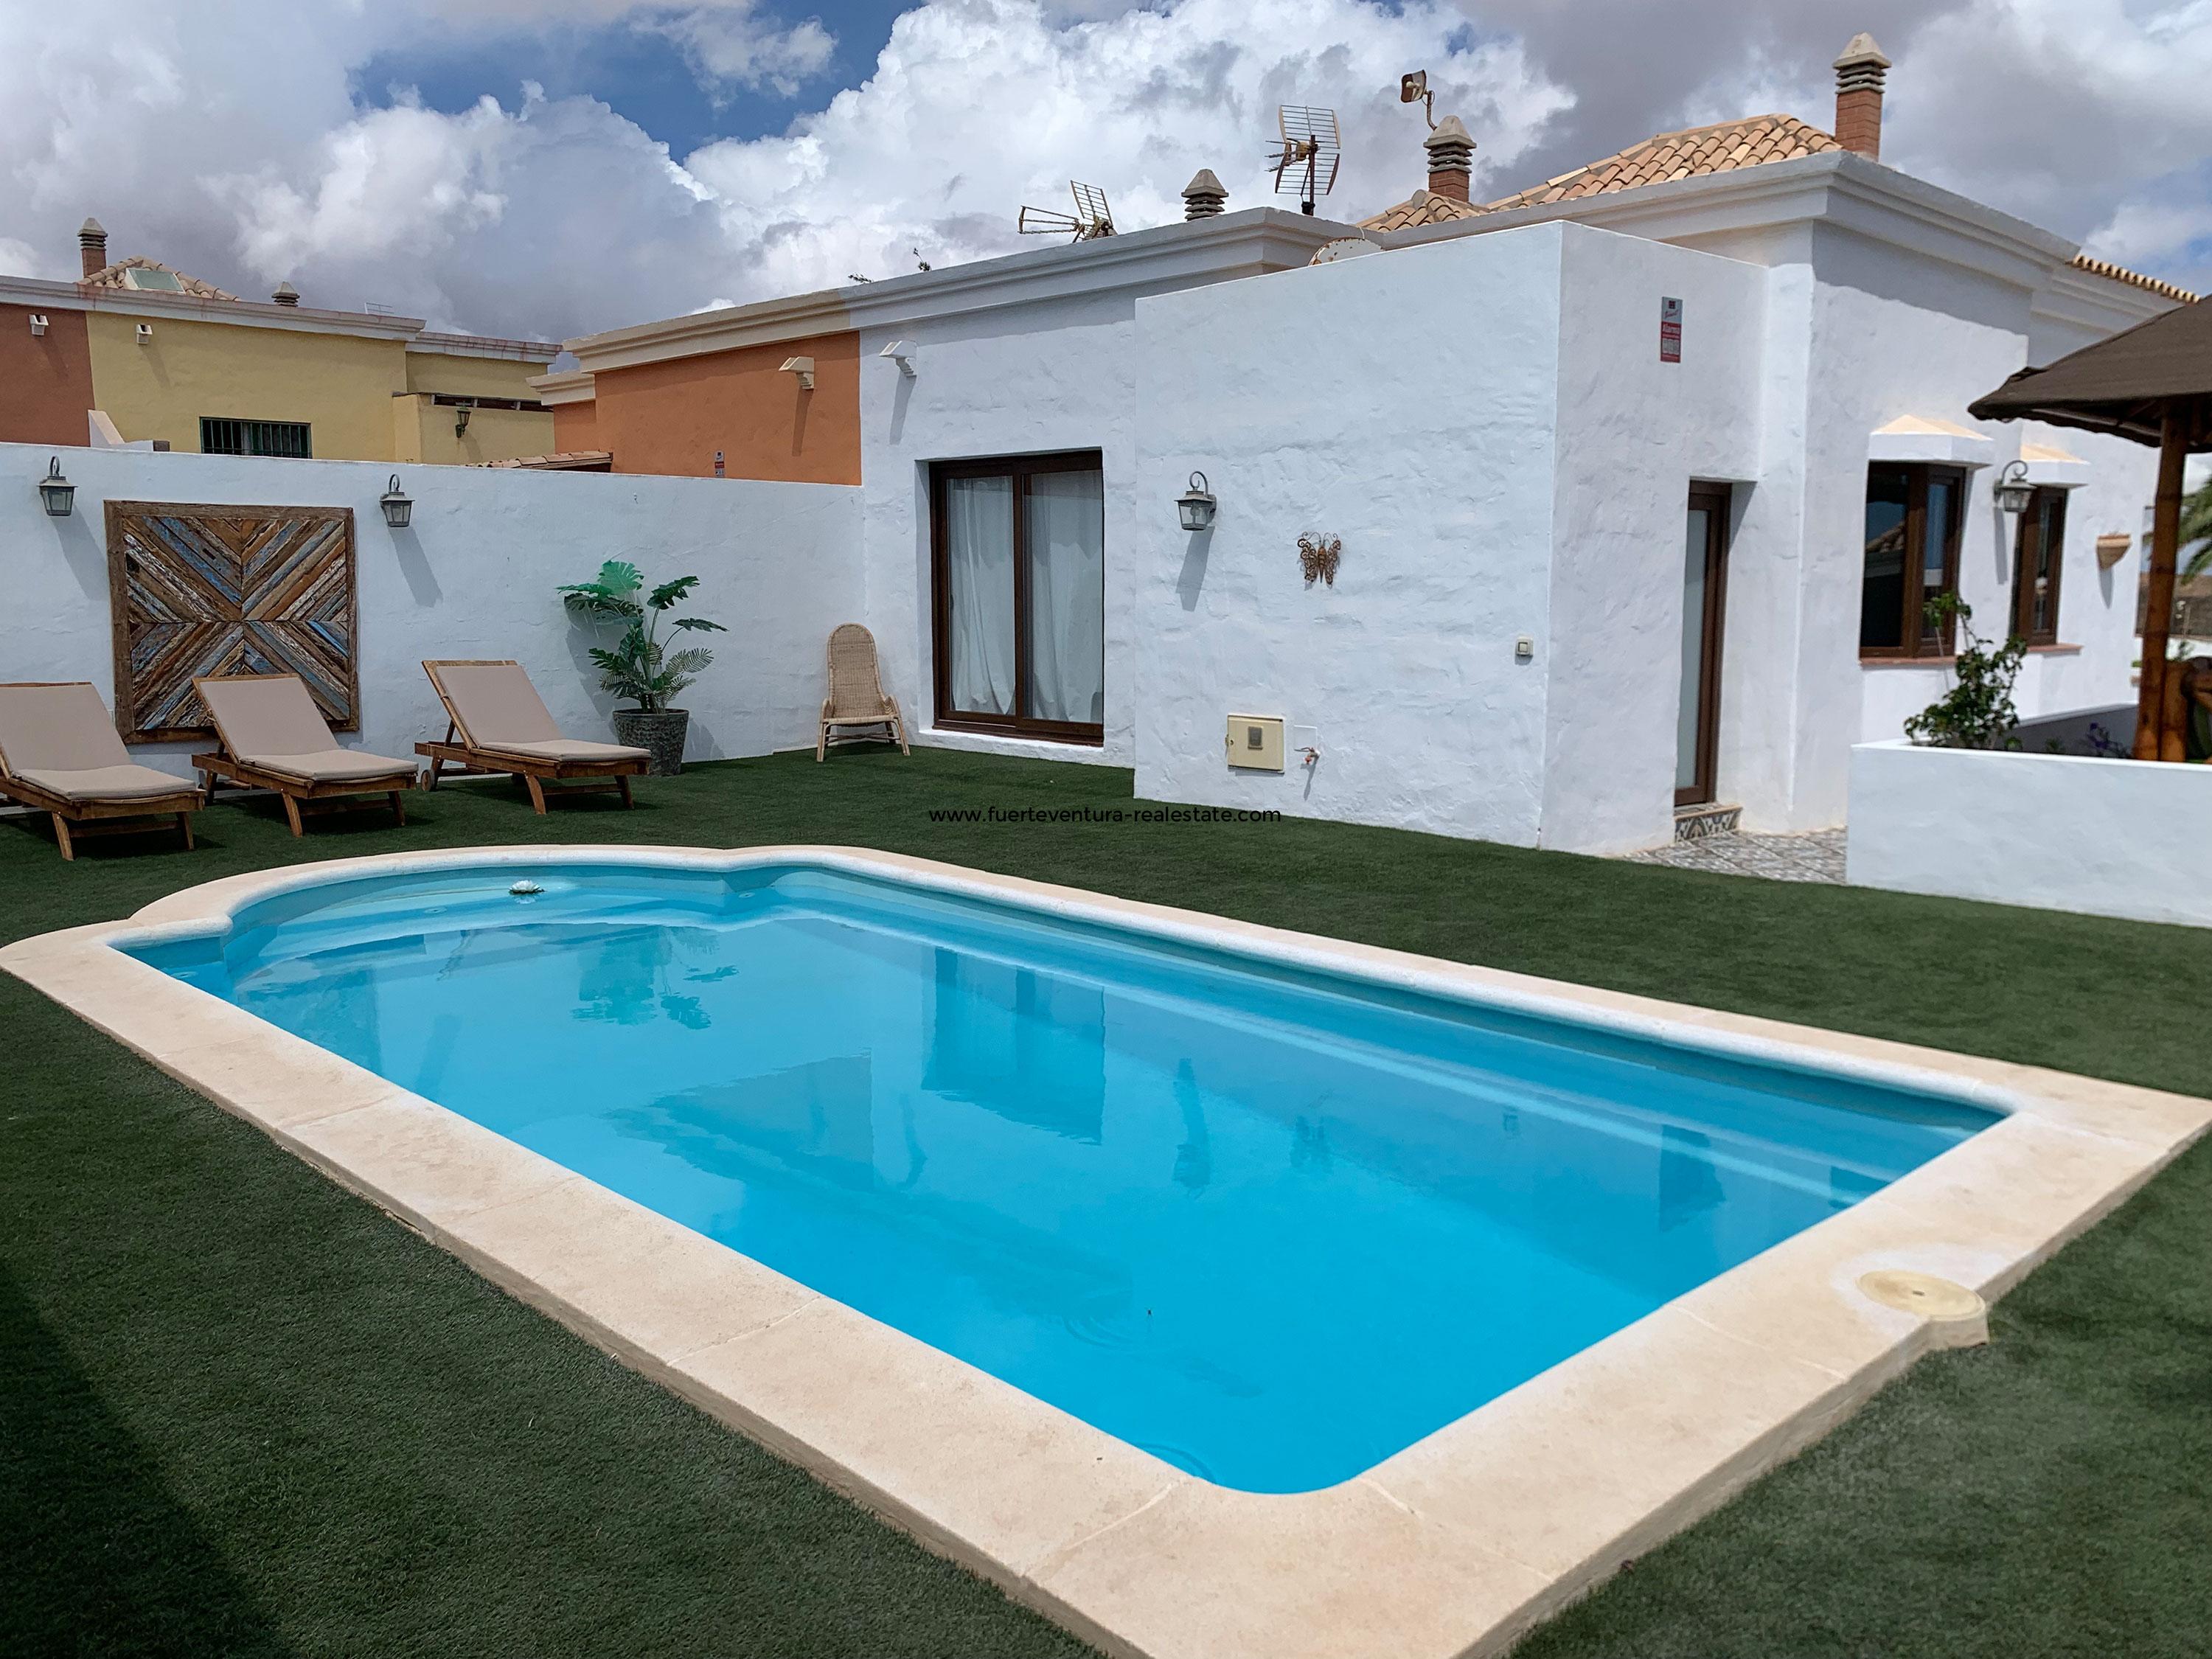 Mooi huis met zwembad op een goede locatie in Caleta de Fuste